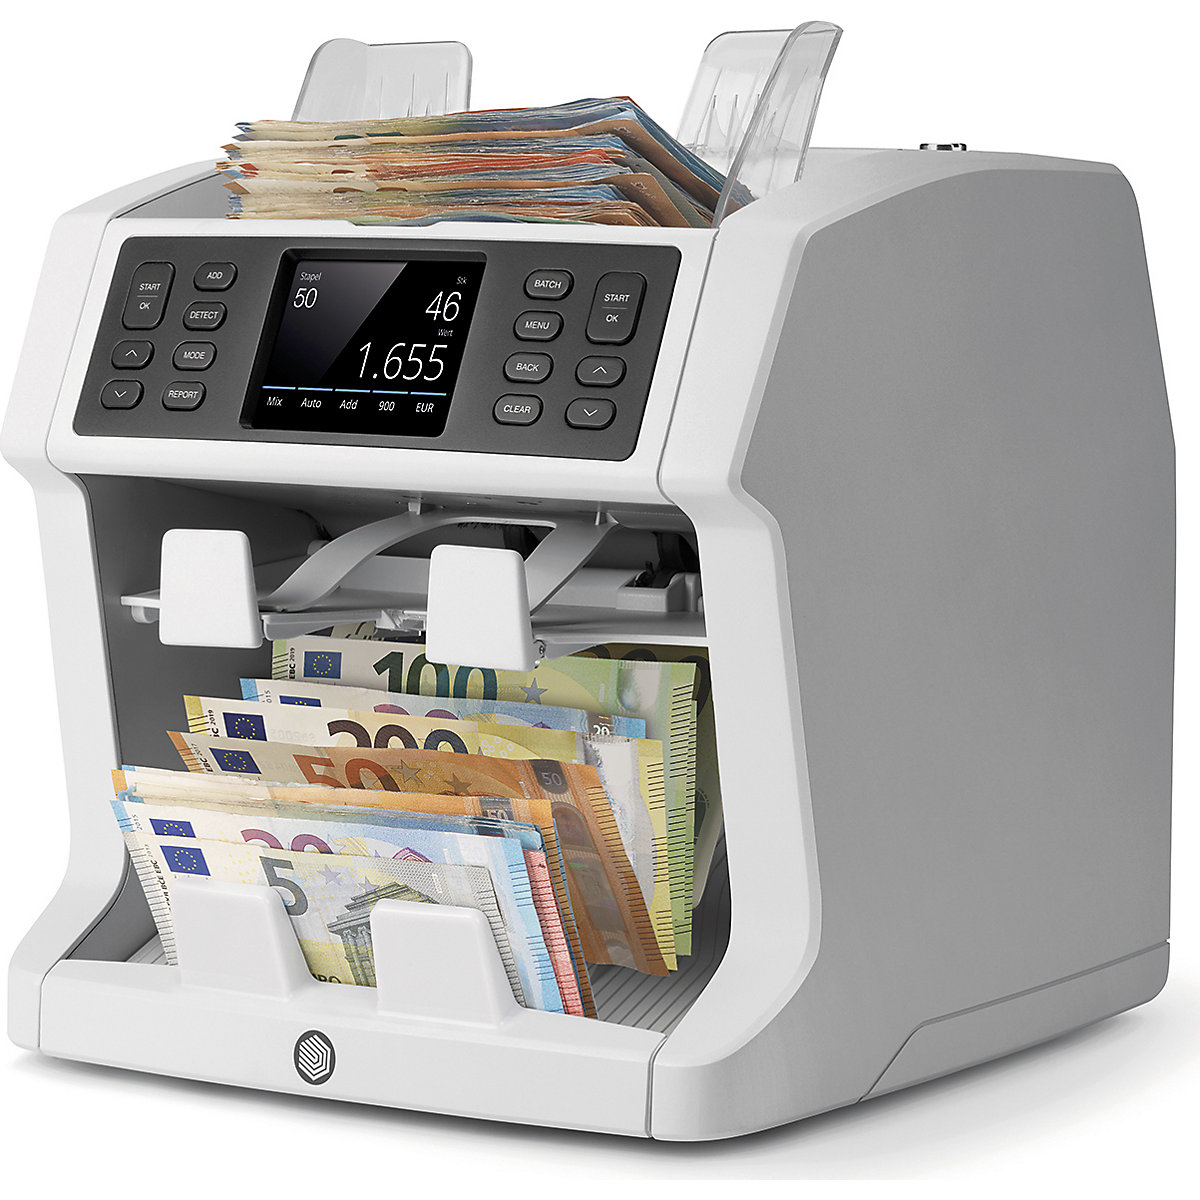 Contabanconote per banconote di tipo diverso con funzione di separazione – Safescan